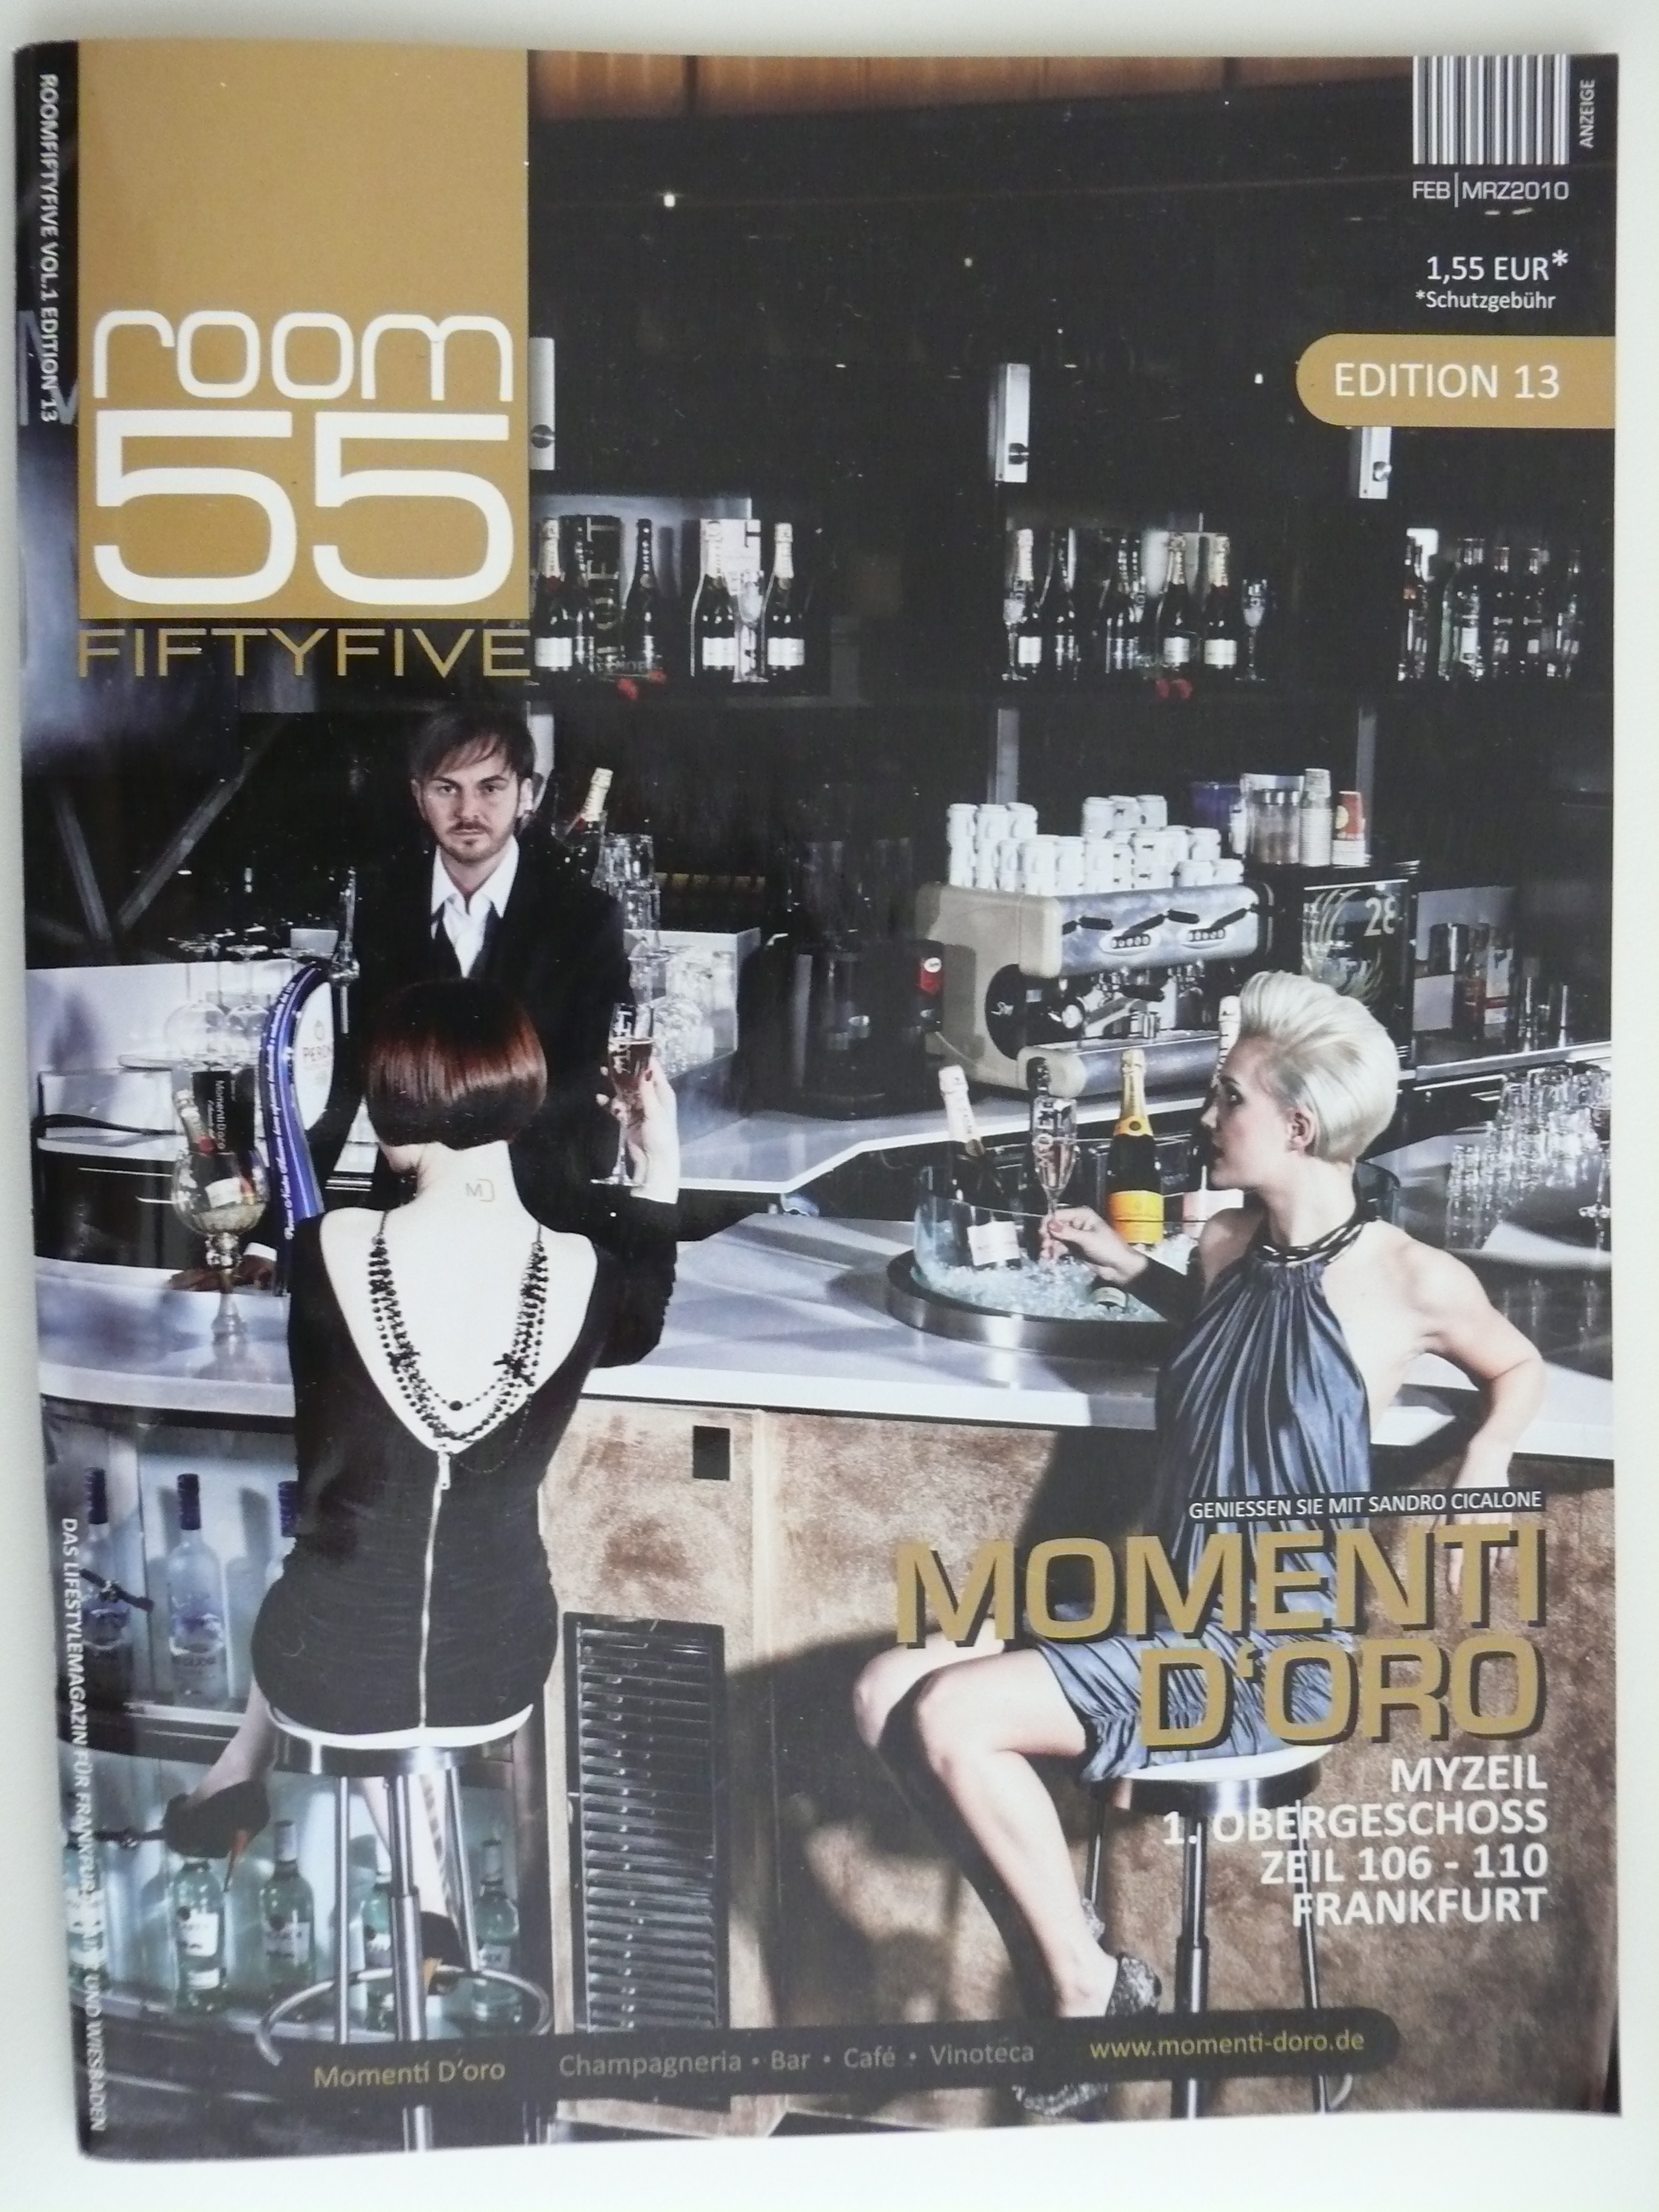 Cover Room 55 mit dem body & mind Artikel vom Personalfitness coach aus Wiesbaden Rosario Battaglia